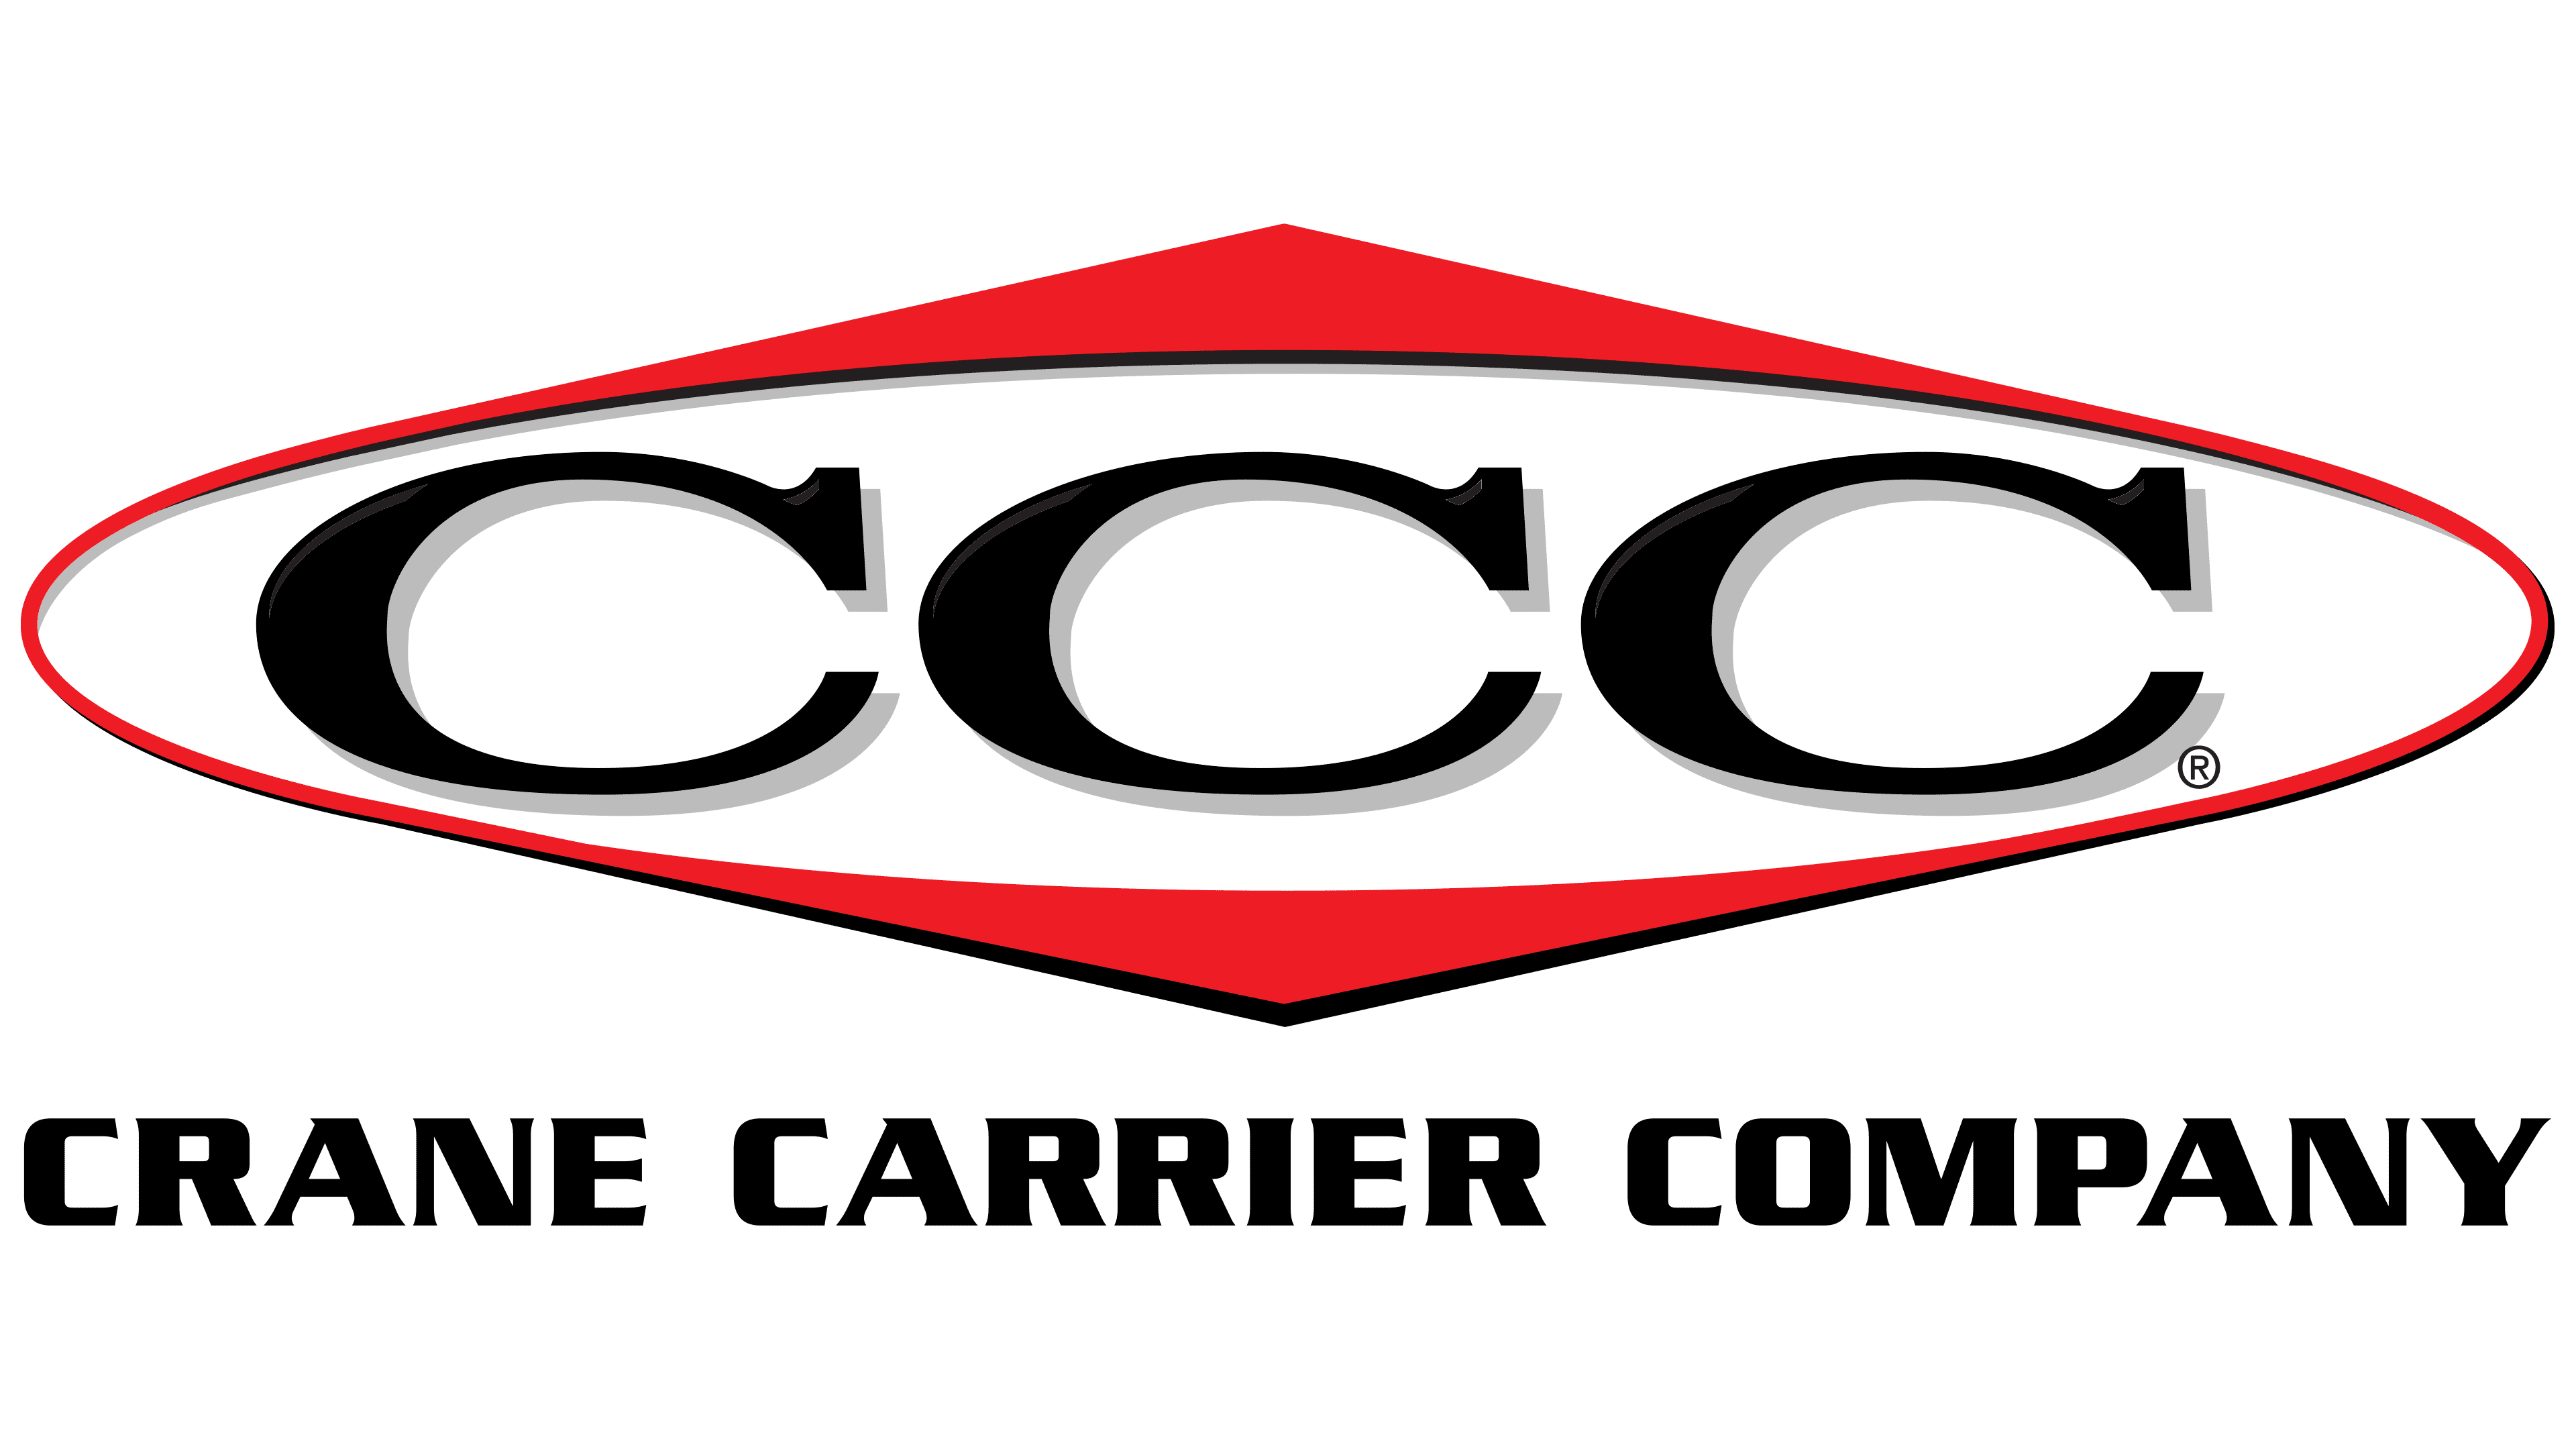 Crane Carrier Company Transparent Logo PNG